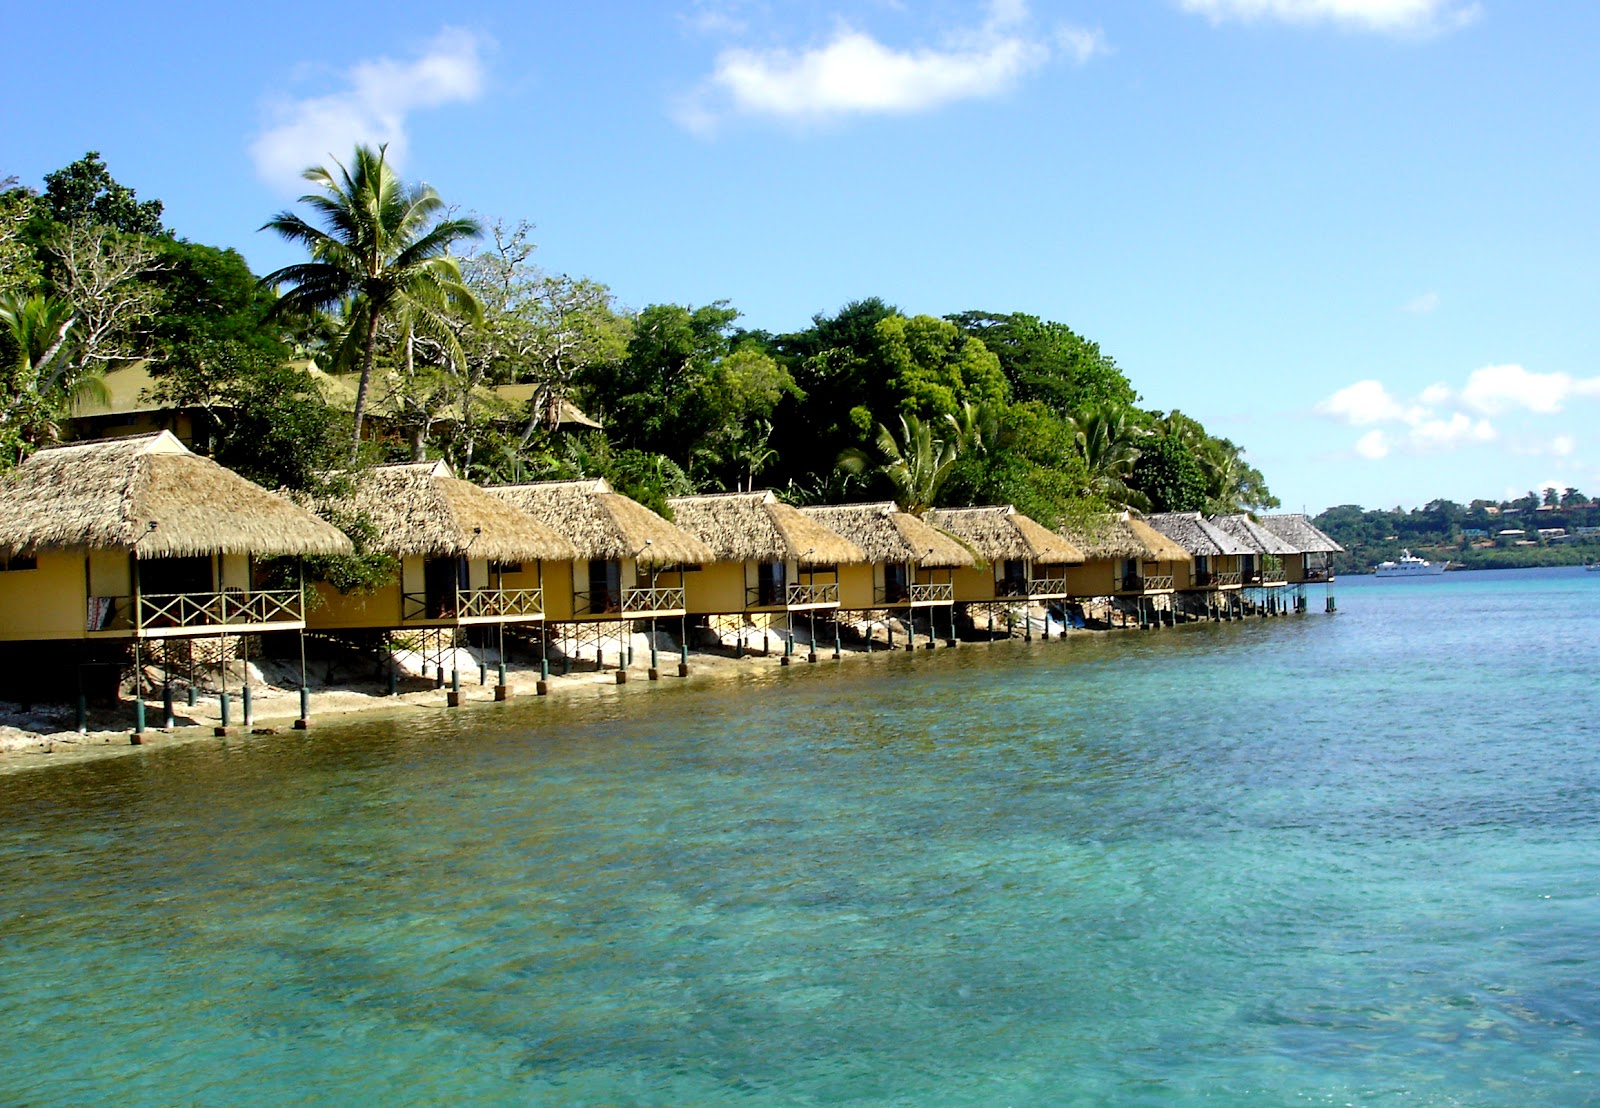 Main Tourist Attractions In Vanuatu